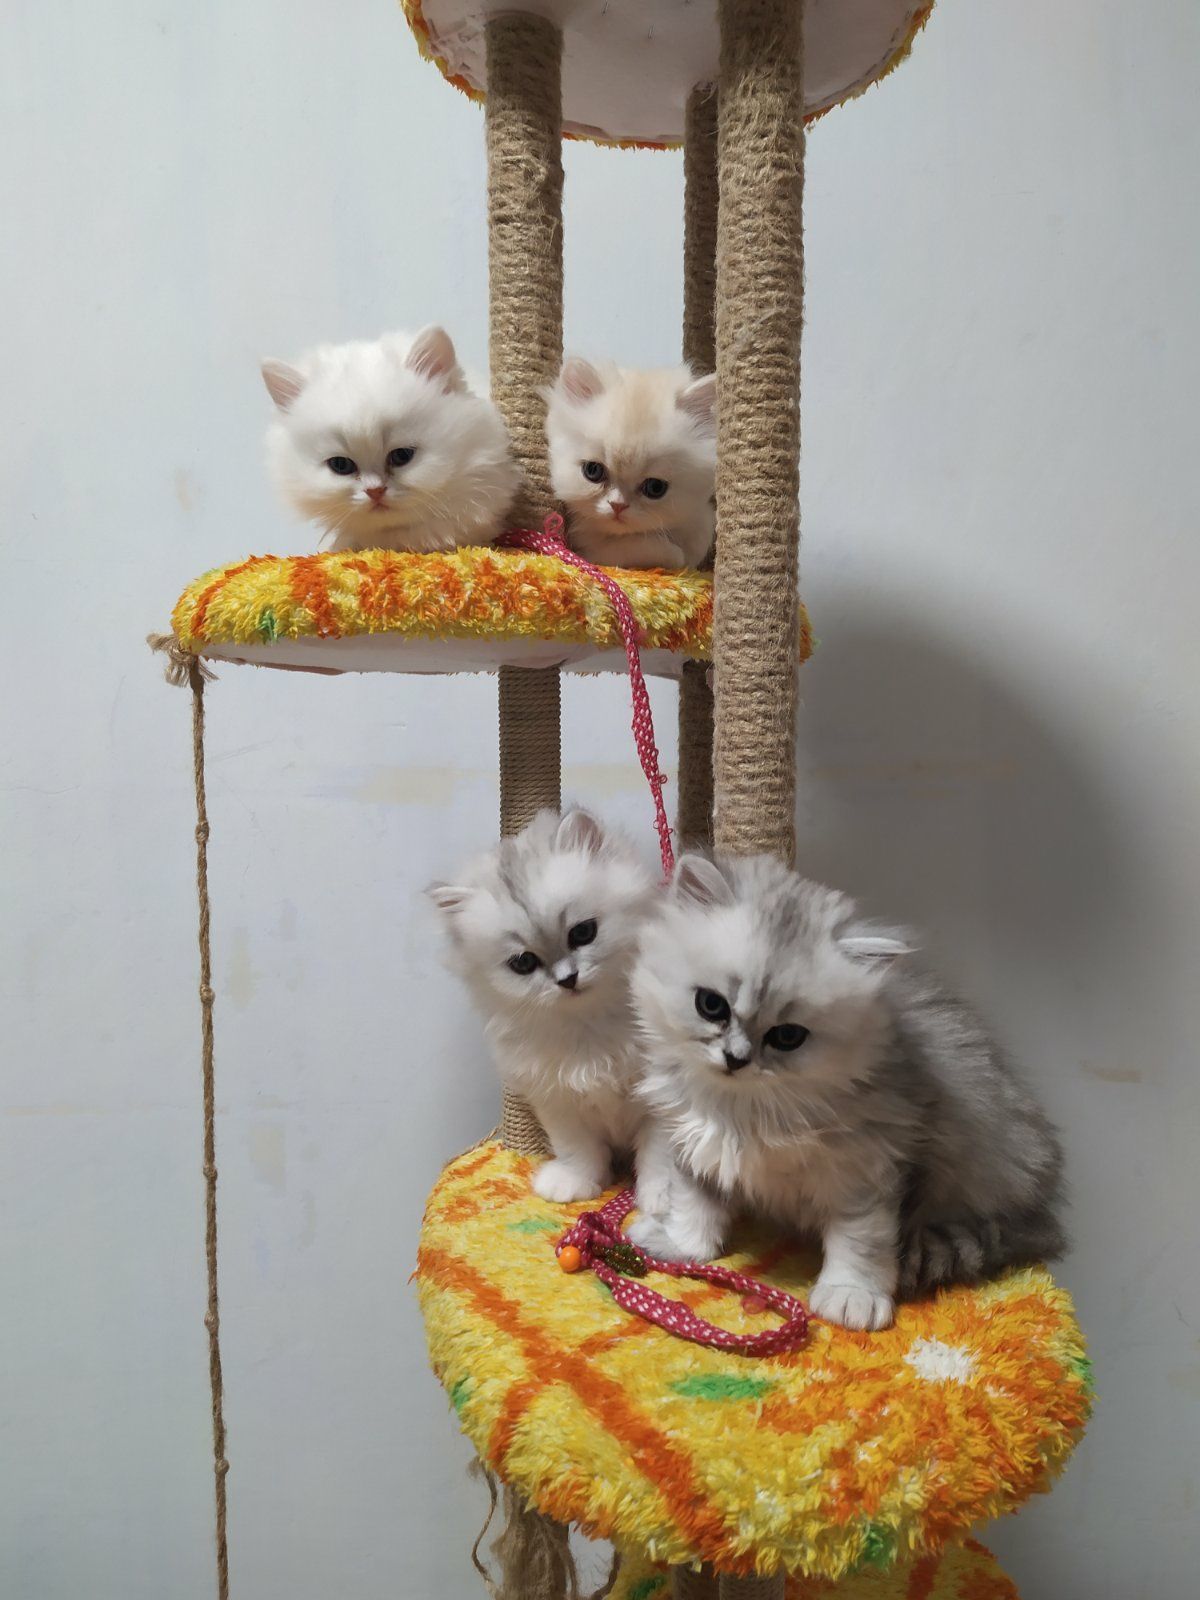 Персидские котята